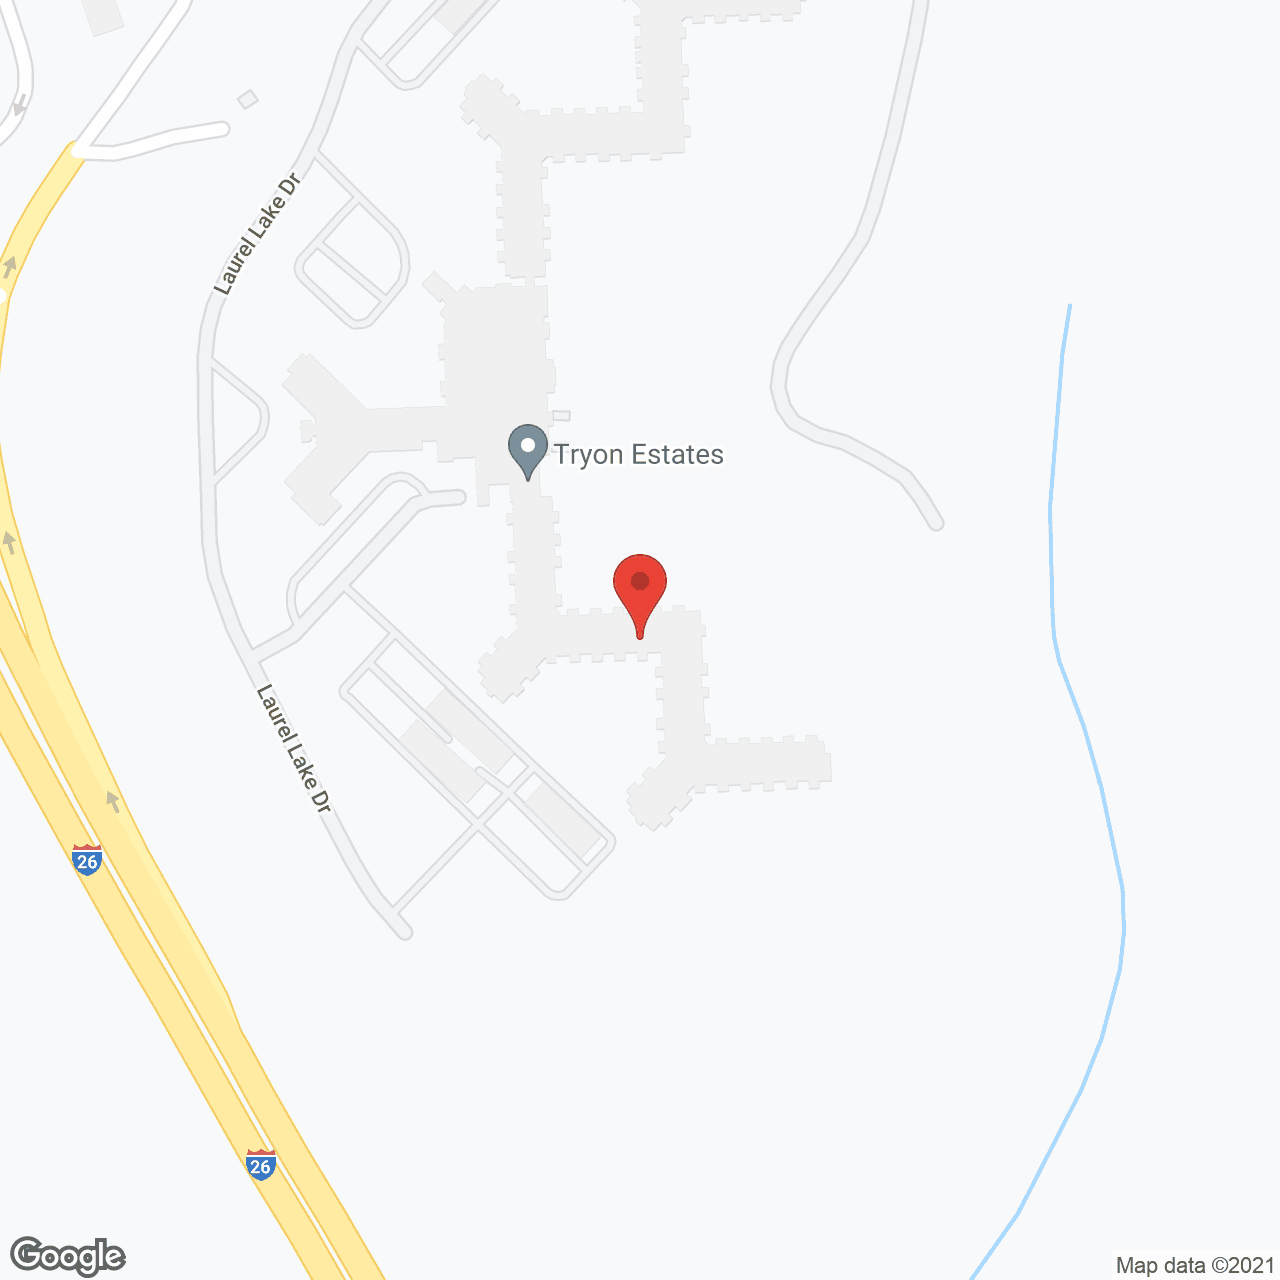 Tryon Estates in google map